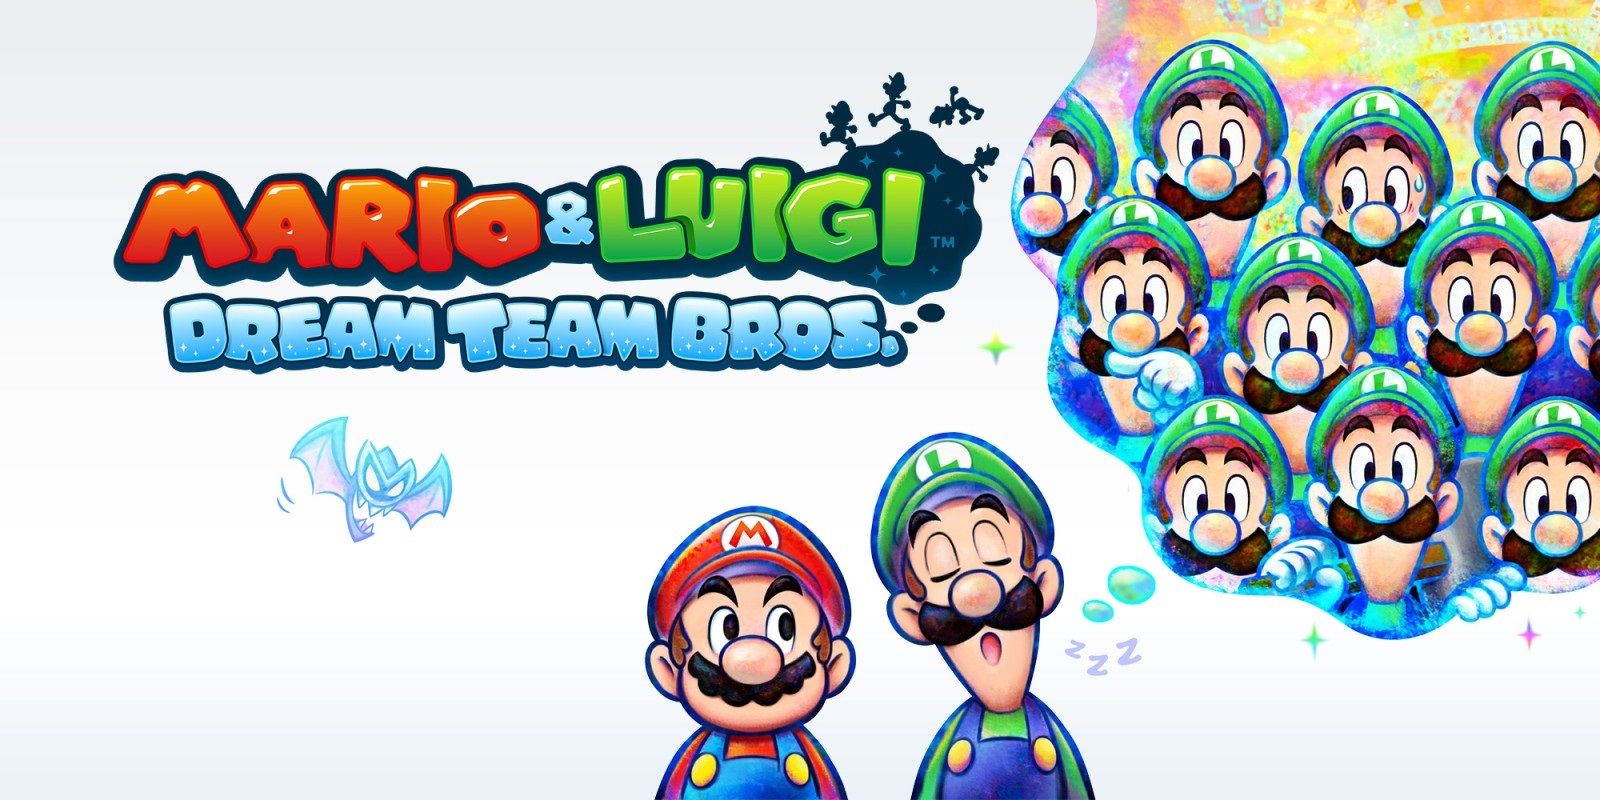 Mario and Luigi Dream Team Bros cover art with Mario and a sleeping Luigi dreaming of more Luigis